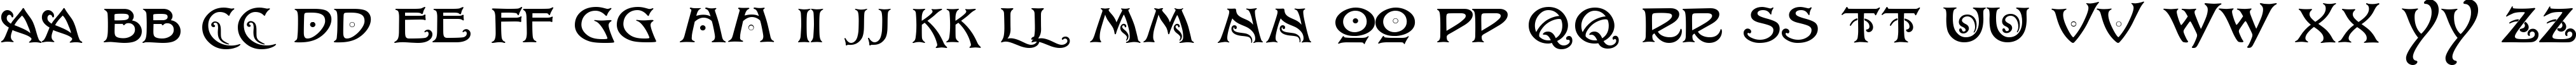 Пример написания английского алфавита шрифтом Baltimore Nouveau